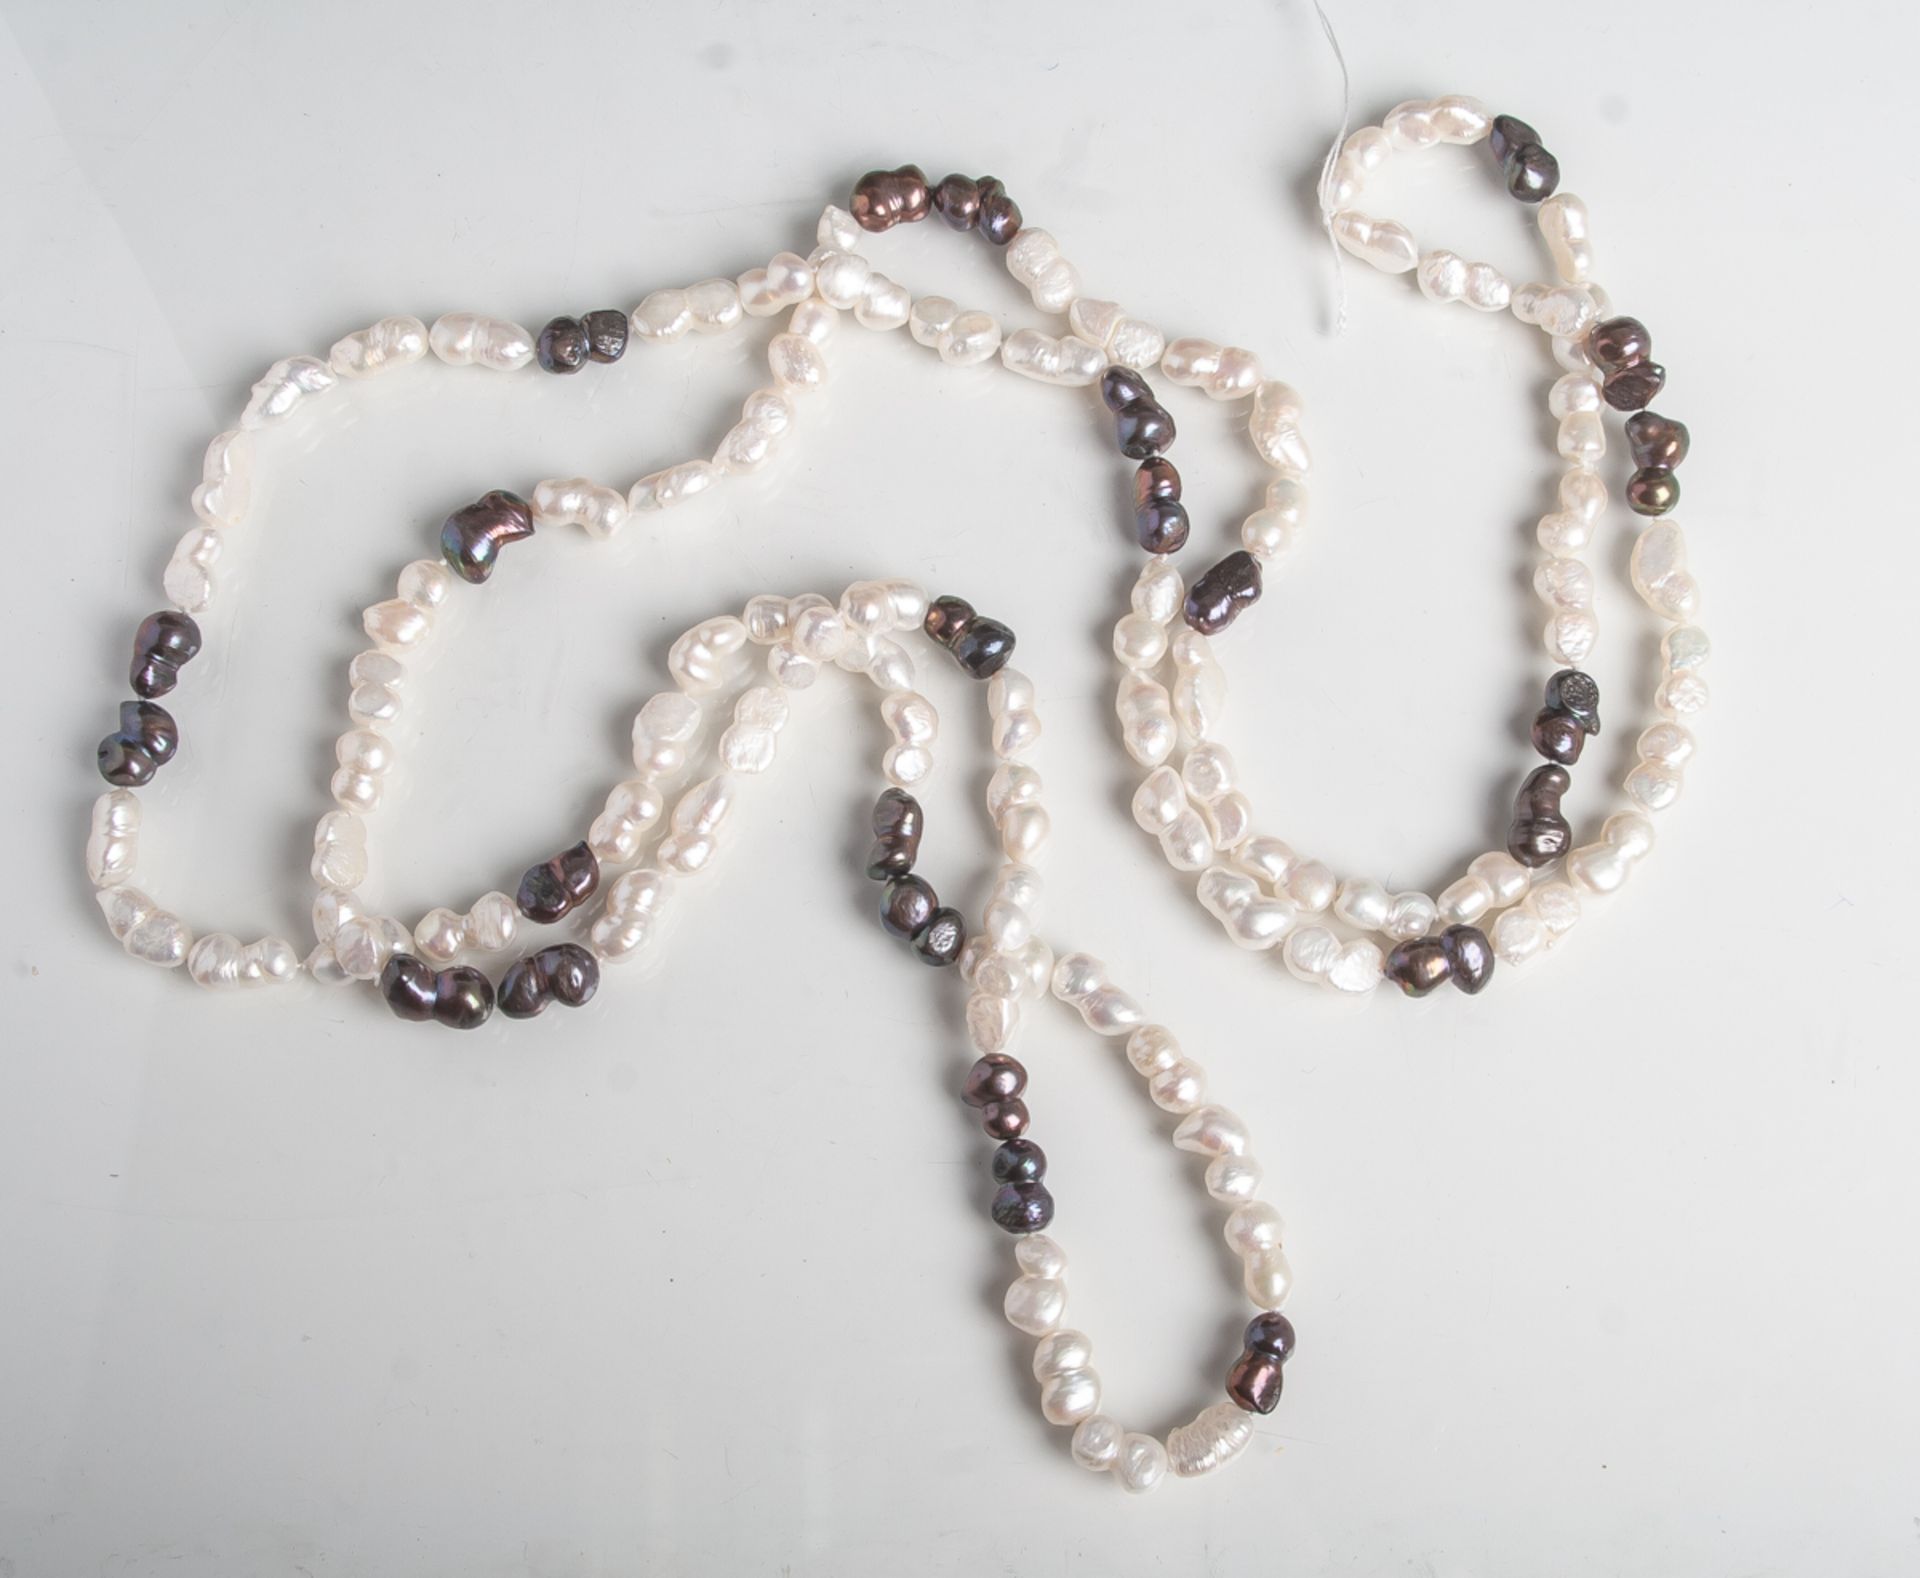 Halskette aus Süsswasserperlen (Biwa-Perlen), 2-farbig, Endloskette, L. ca. 92 cm.- - -21.00 %